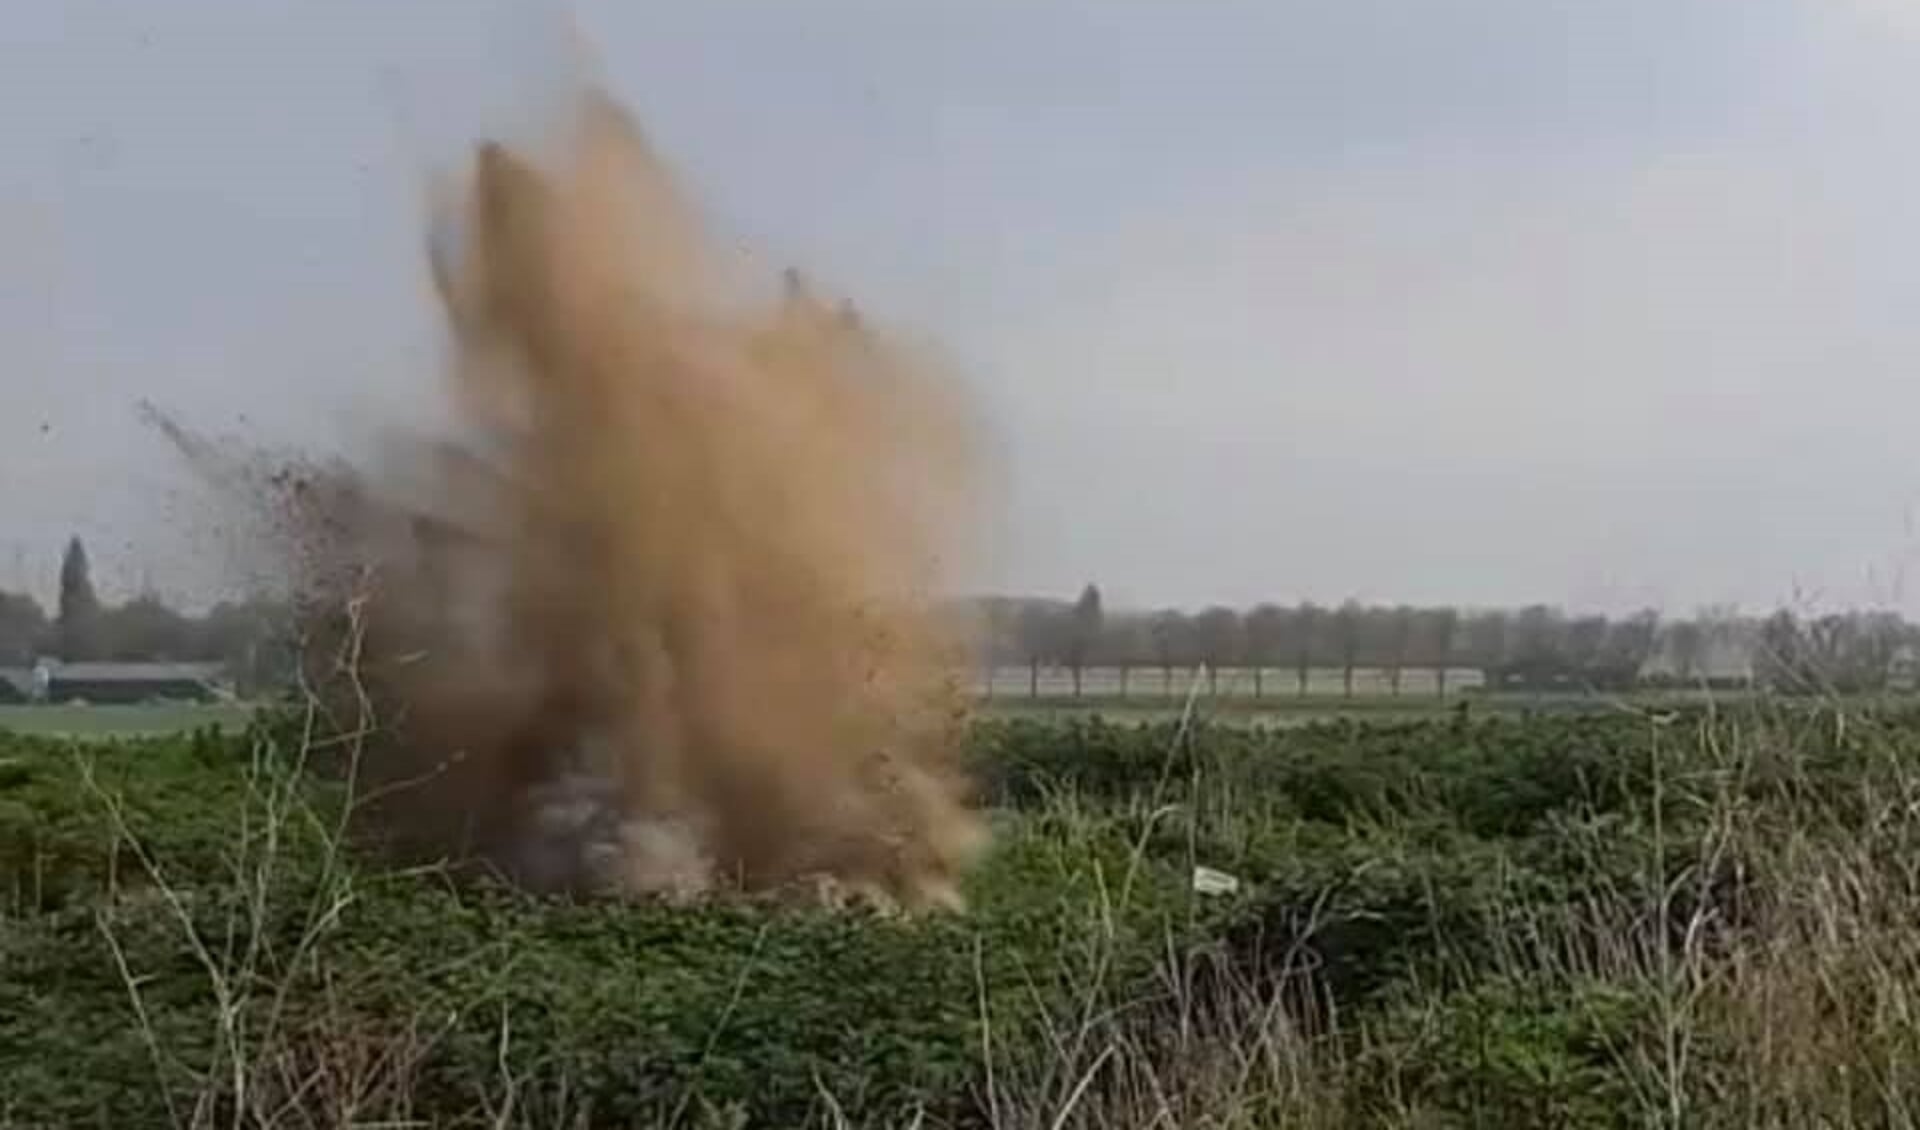 De explosief is in Zevenbergen tot ontploffing gebracht. 